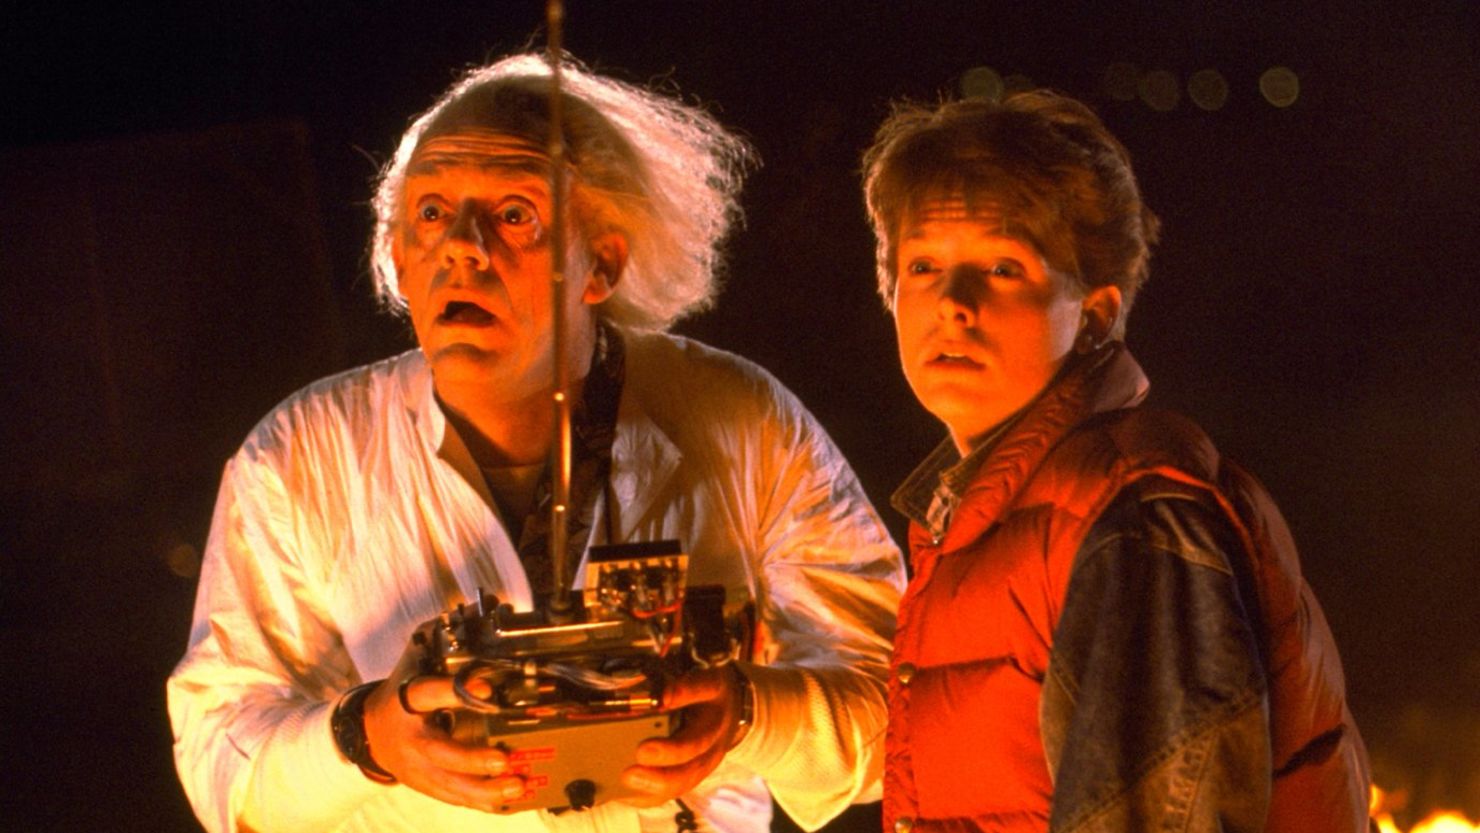 La trilogía "Back to the future" fue estrenada en 1985. Fue dirigida por Robert Zemeckis y Bob Gale y producida por Steven Spilberg. En la parte II de esta entrega los protagonistas viajan al año 2015.